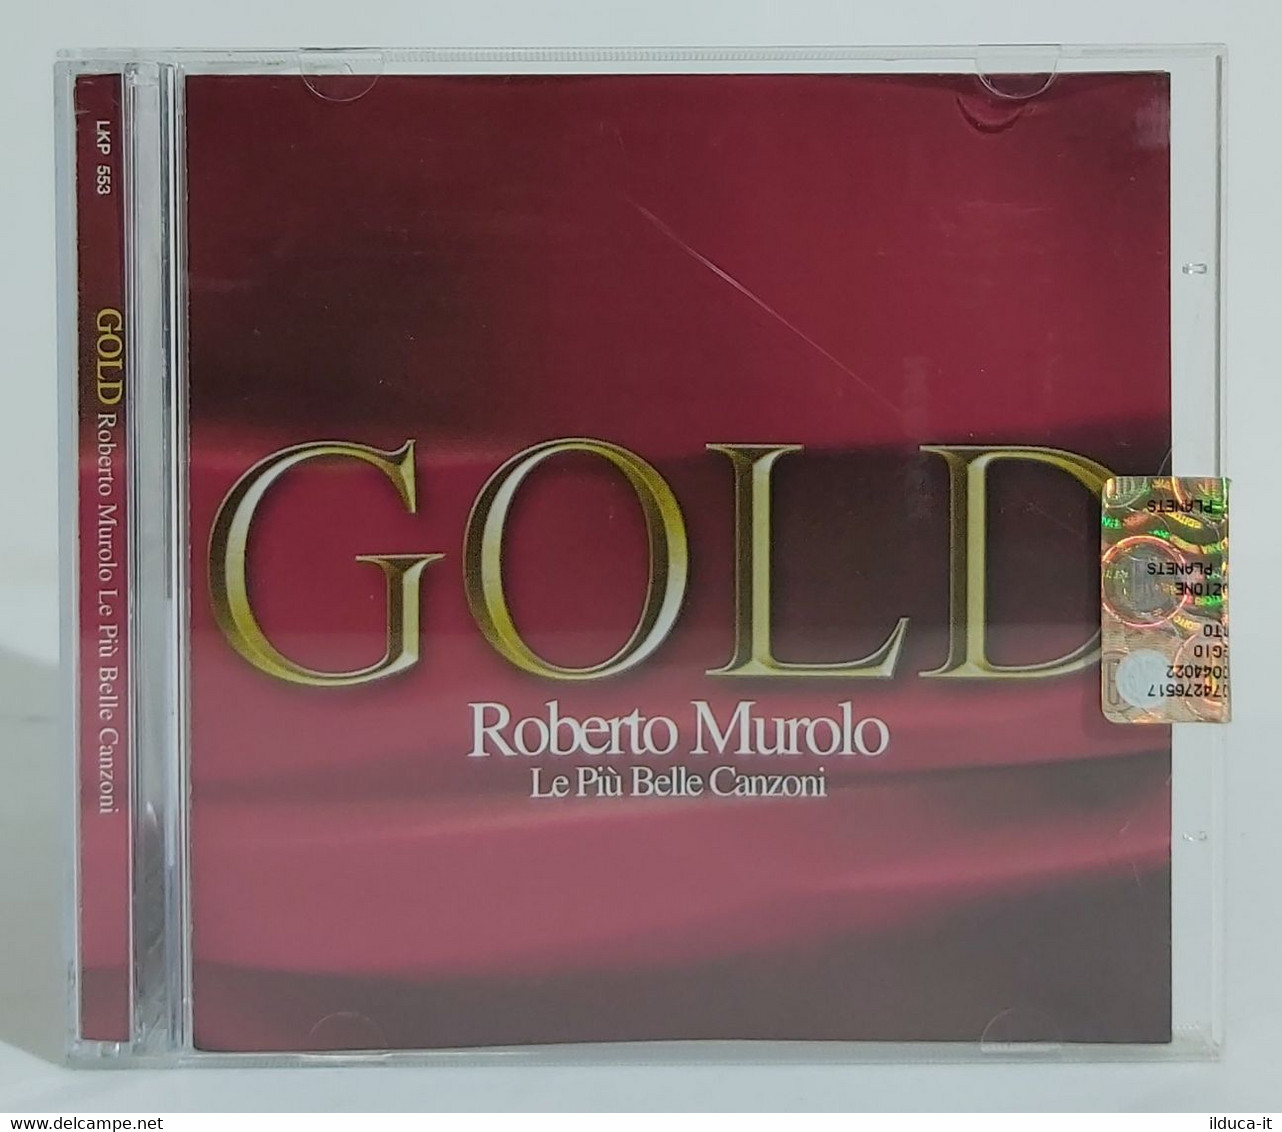 I102306 CD - Roberto Murolo - Gold Le Più Belle Canzoni - Musicali Festa 2005 - Other - Italian Music